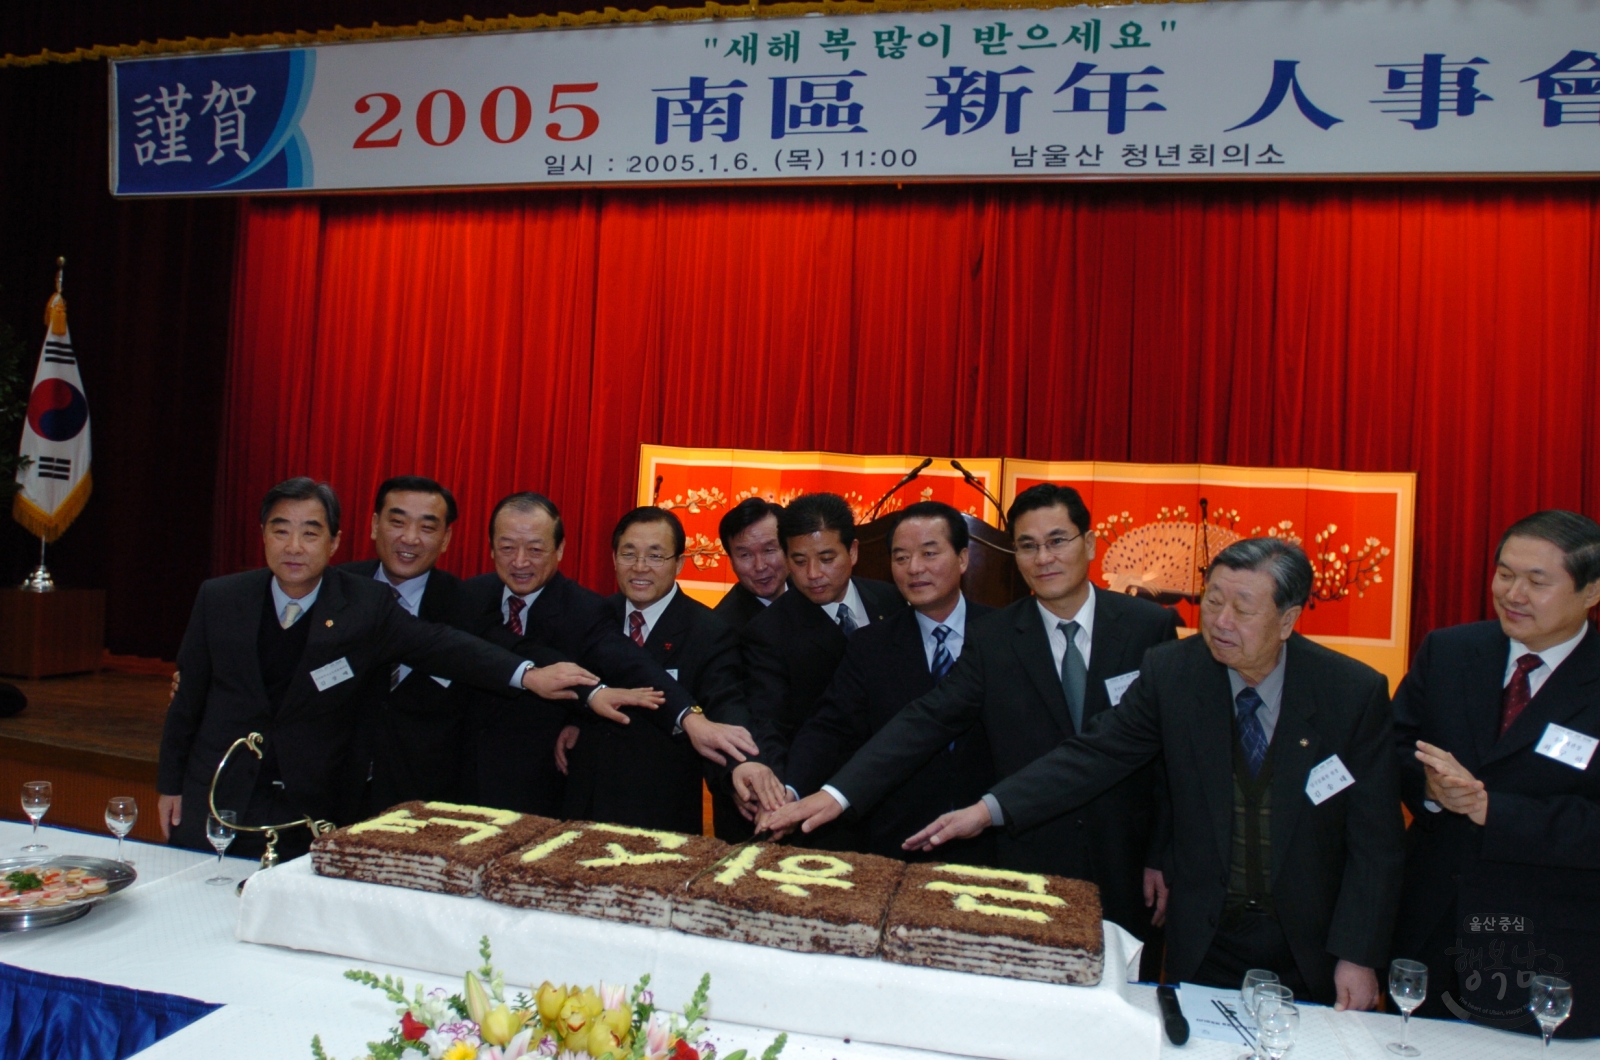 2005년도 신년인사회 의 사진